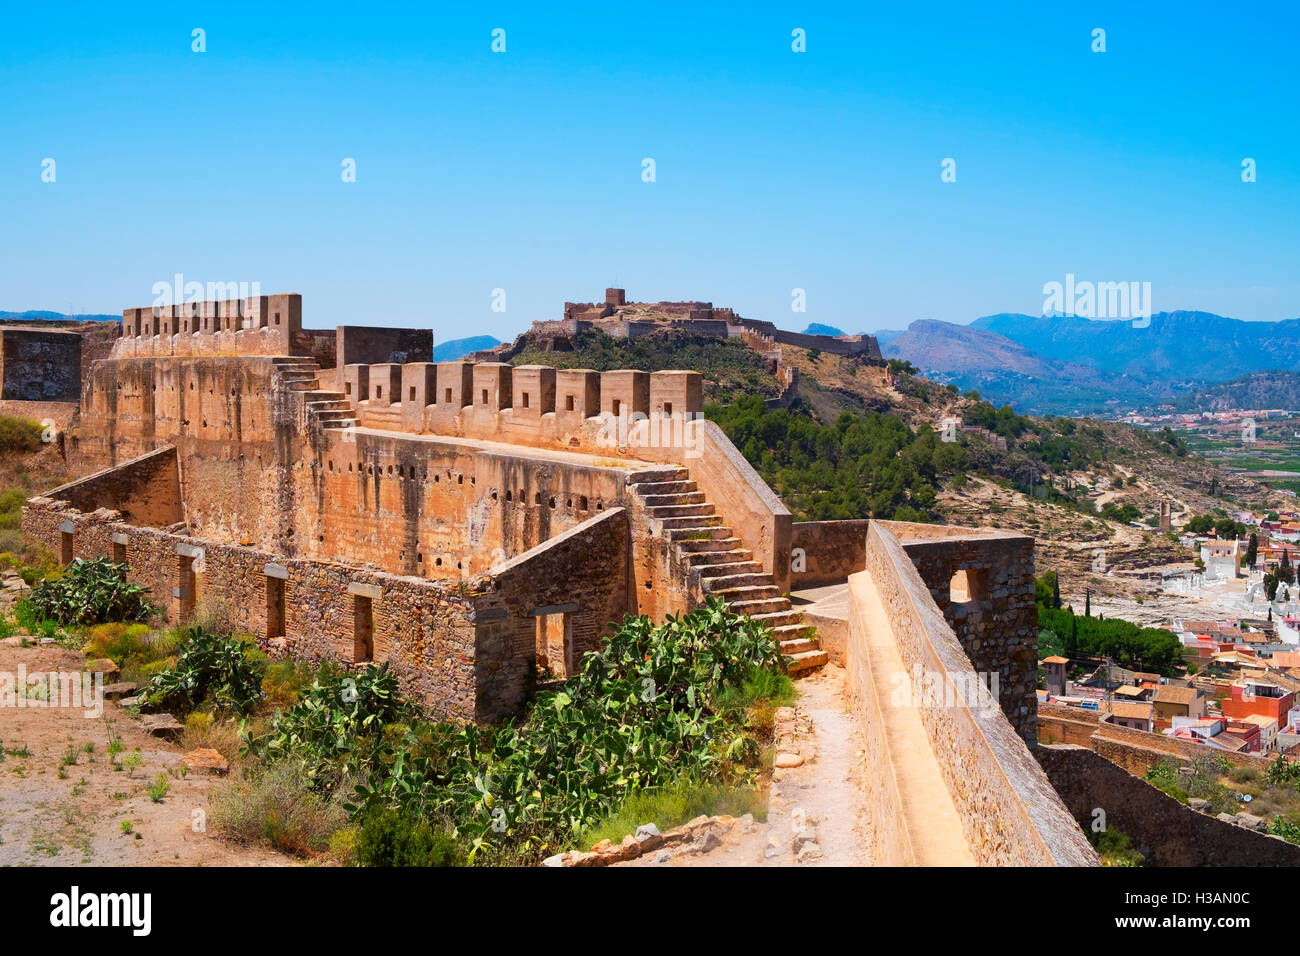 Une vue de l'ancienne Cité Romaine et Mauresque, vestiges de la Citadelle de Sagunto, Espagne, dans le haut d'une colline Banque D'Images